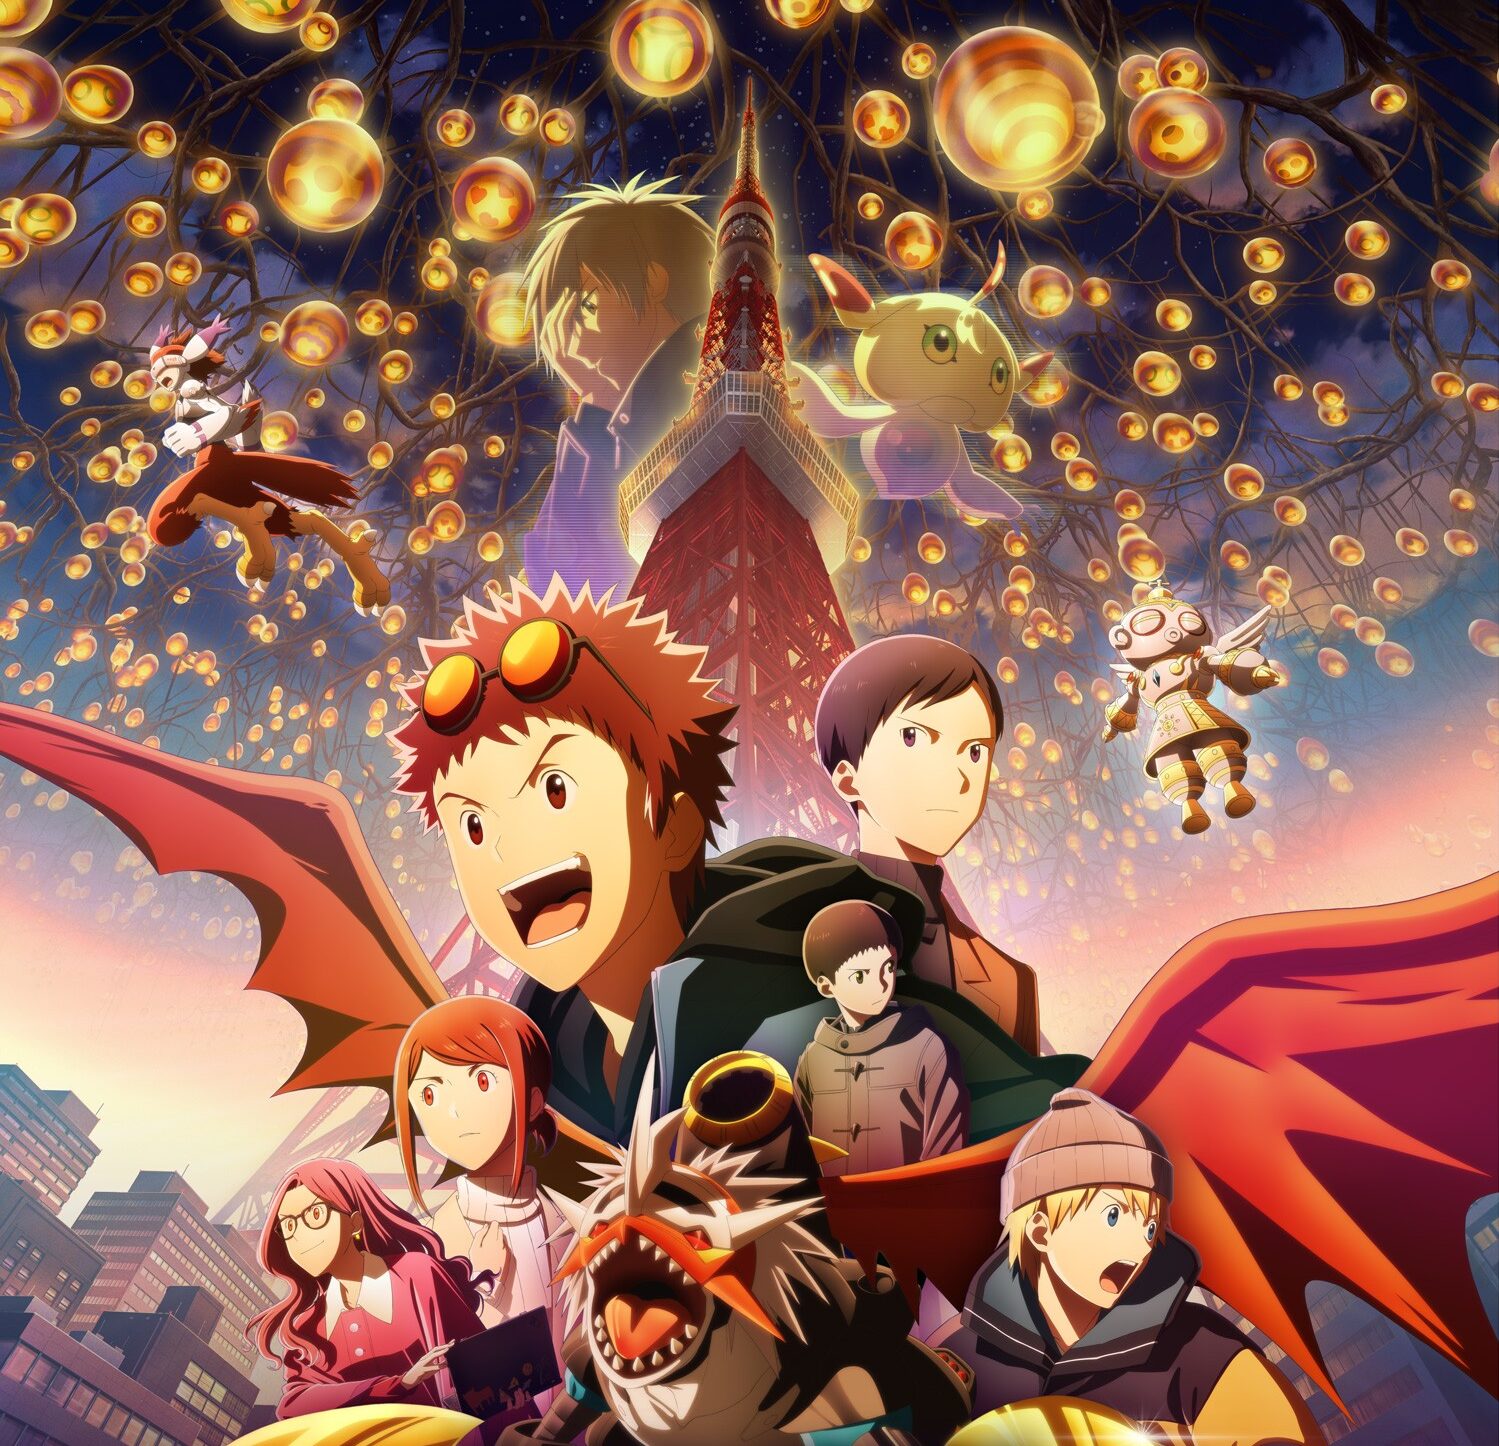 La nueva película Digimon Adventure 02: The Beginning llegará a los cines de toda España